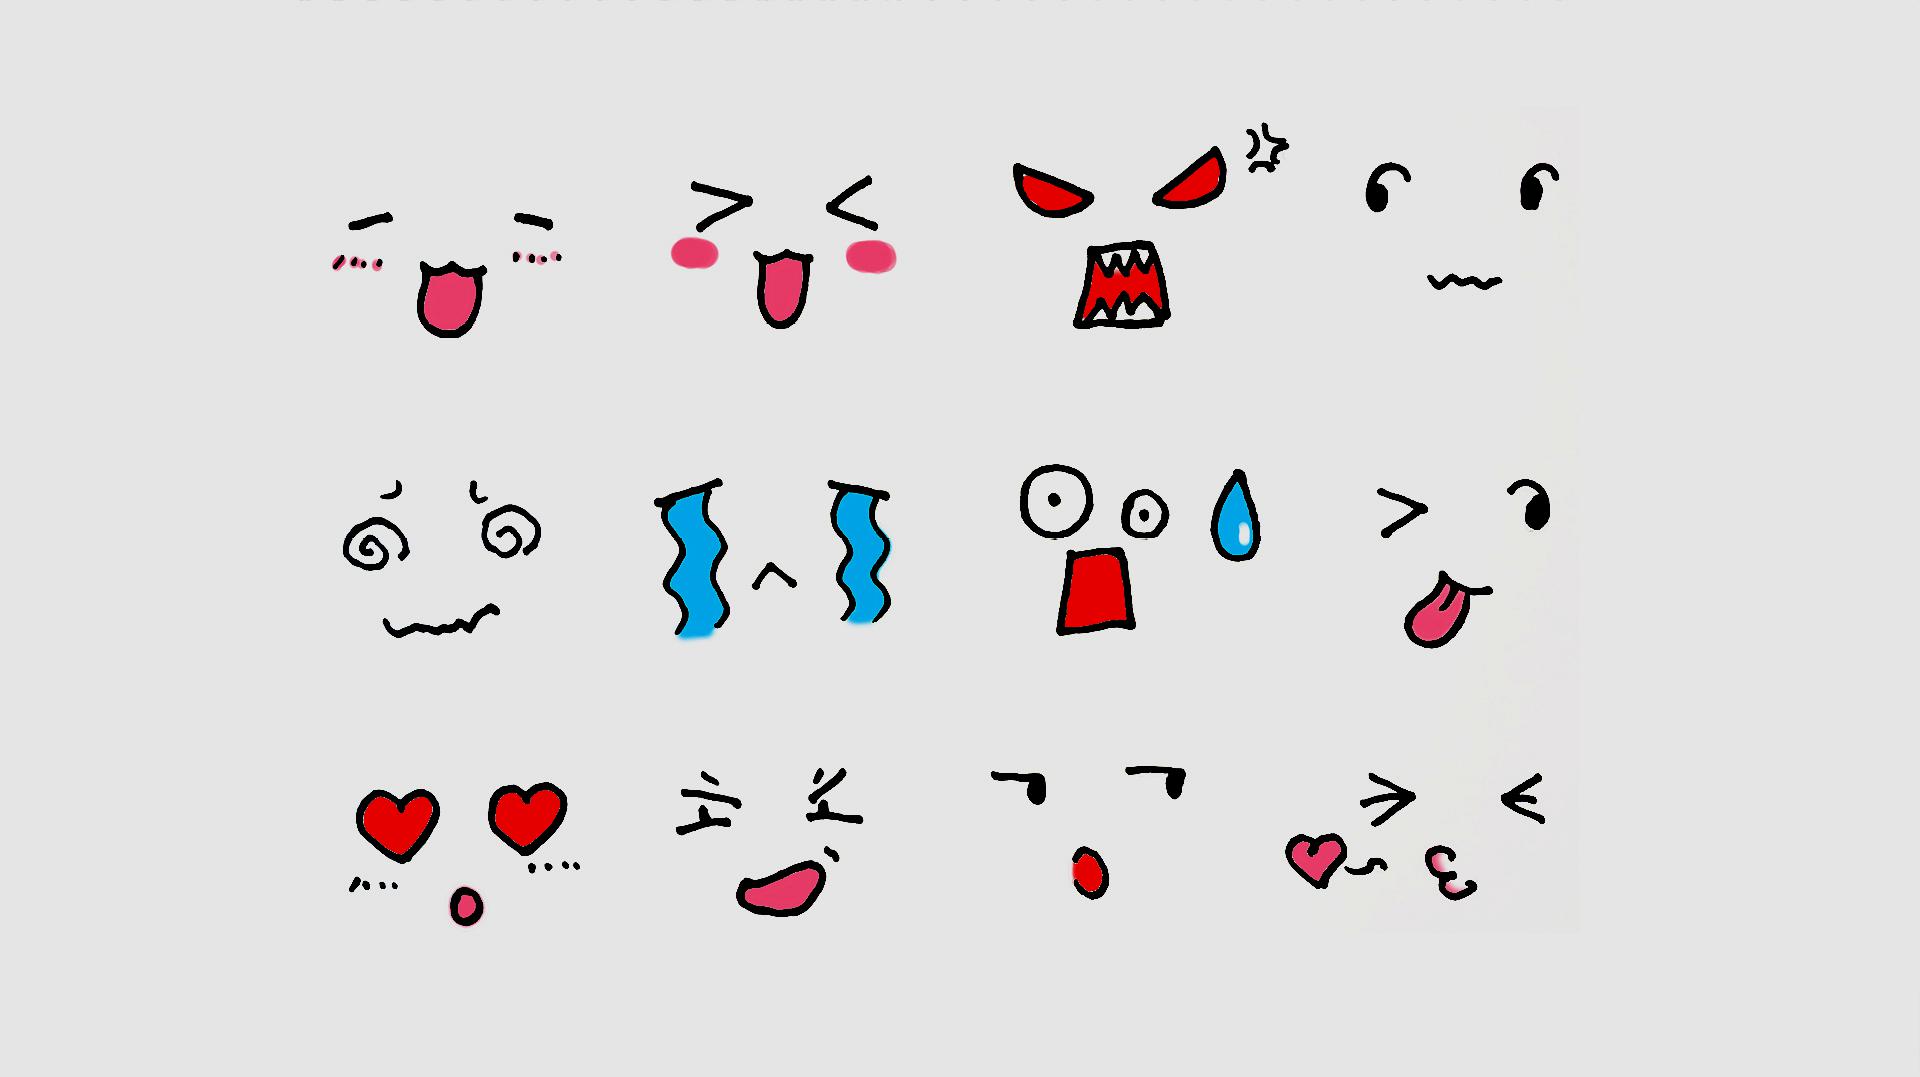 12种不同表情简笔画,选一款匹配你此刻的心情吧